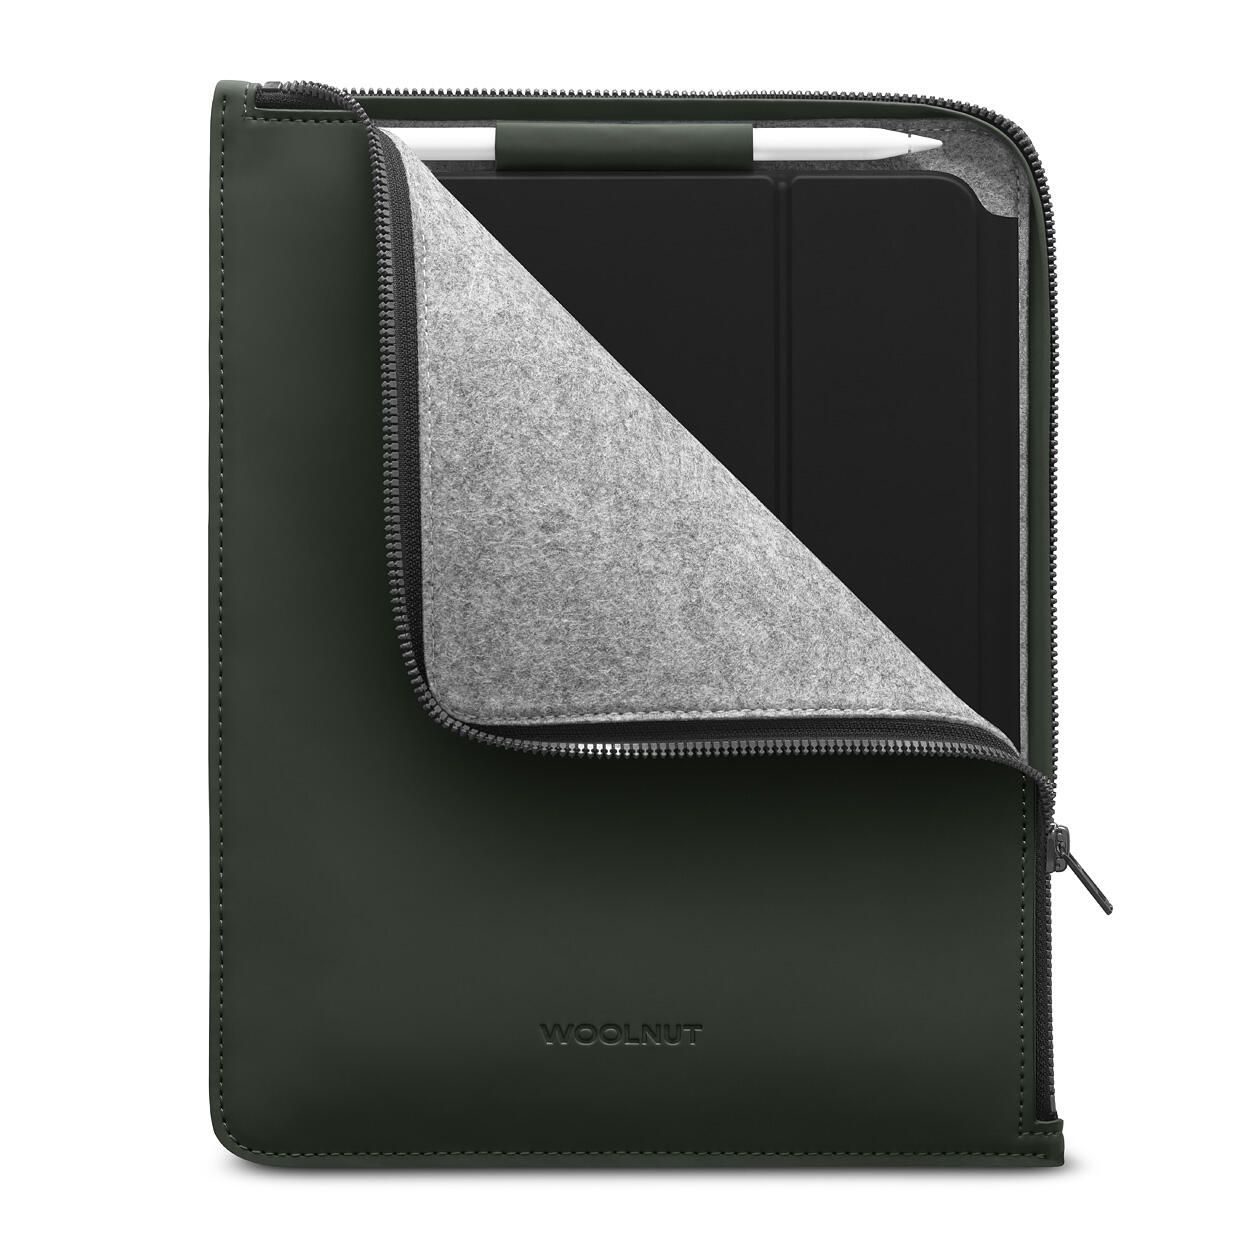 Woolnut beschichtetes Folio für iPad Pro 11" & iPad Air , grün